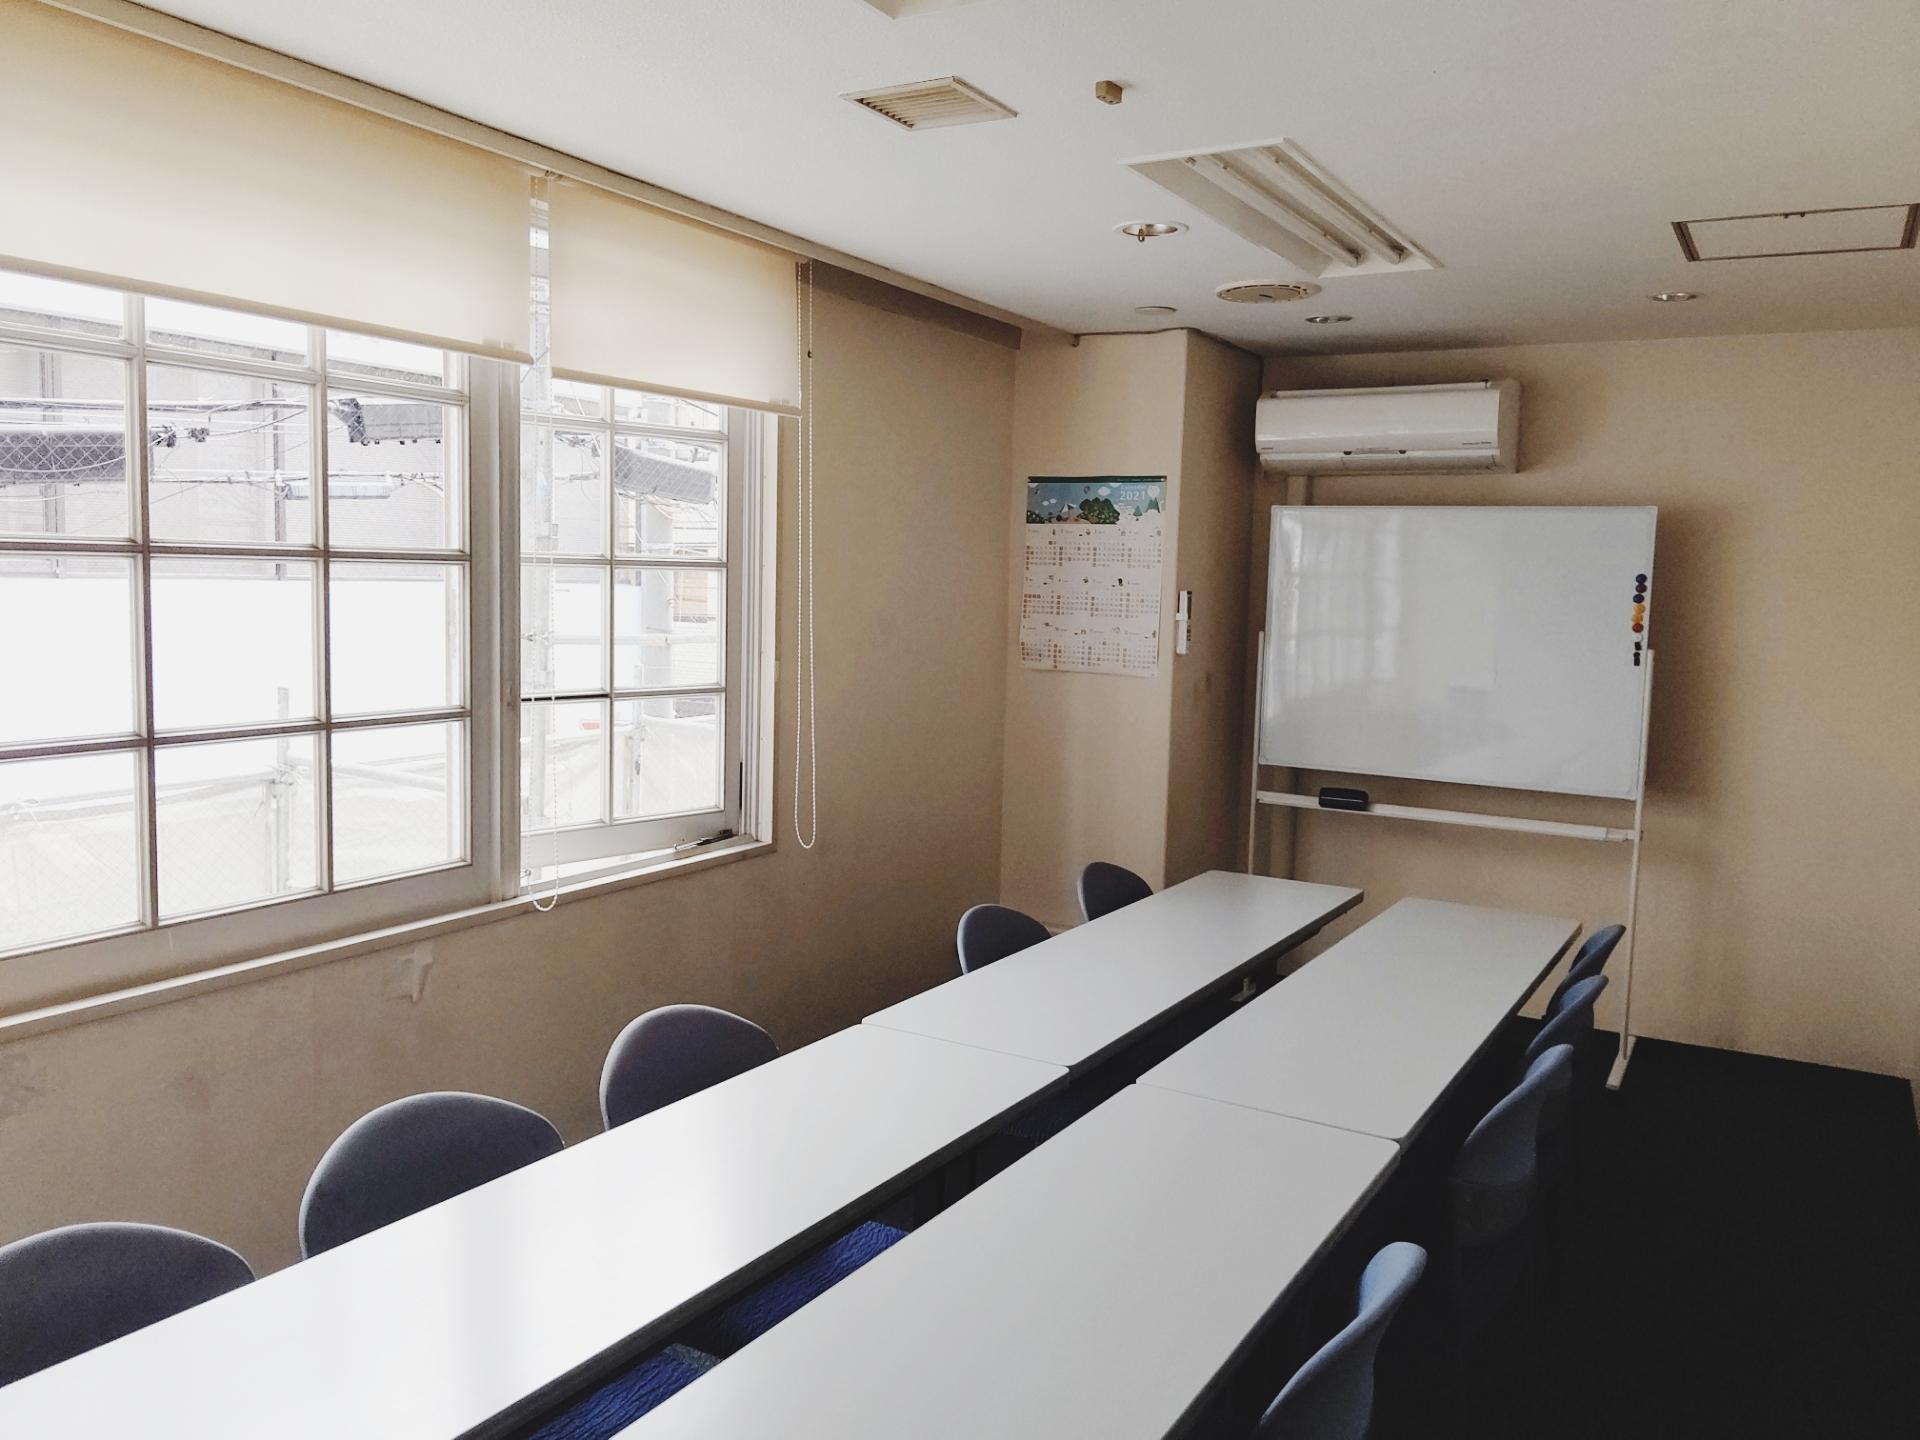 あみぐるみ&かぎ針編み教室Atelier Luna西宮北口教室